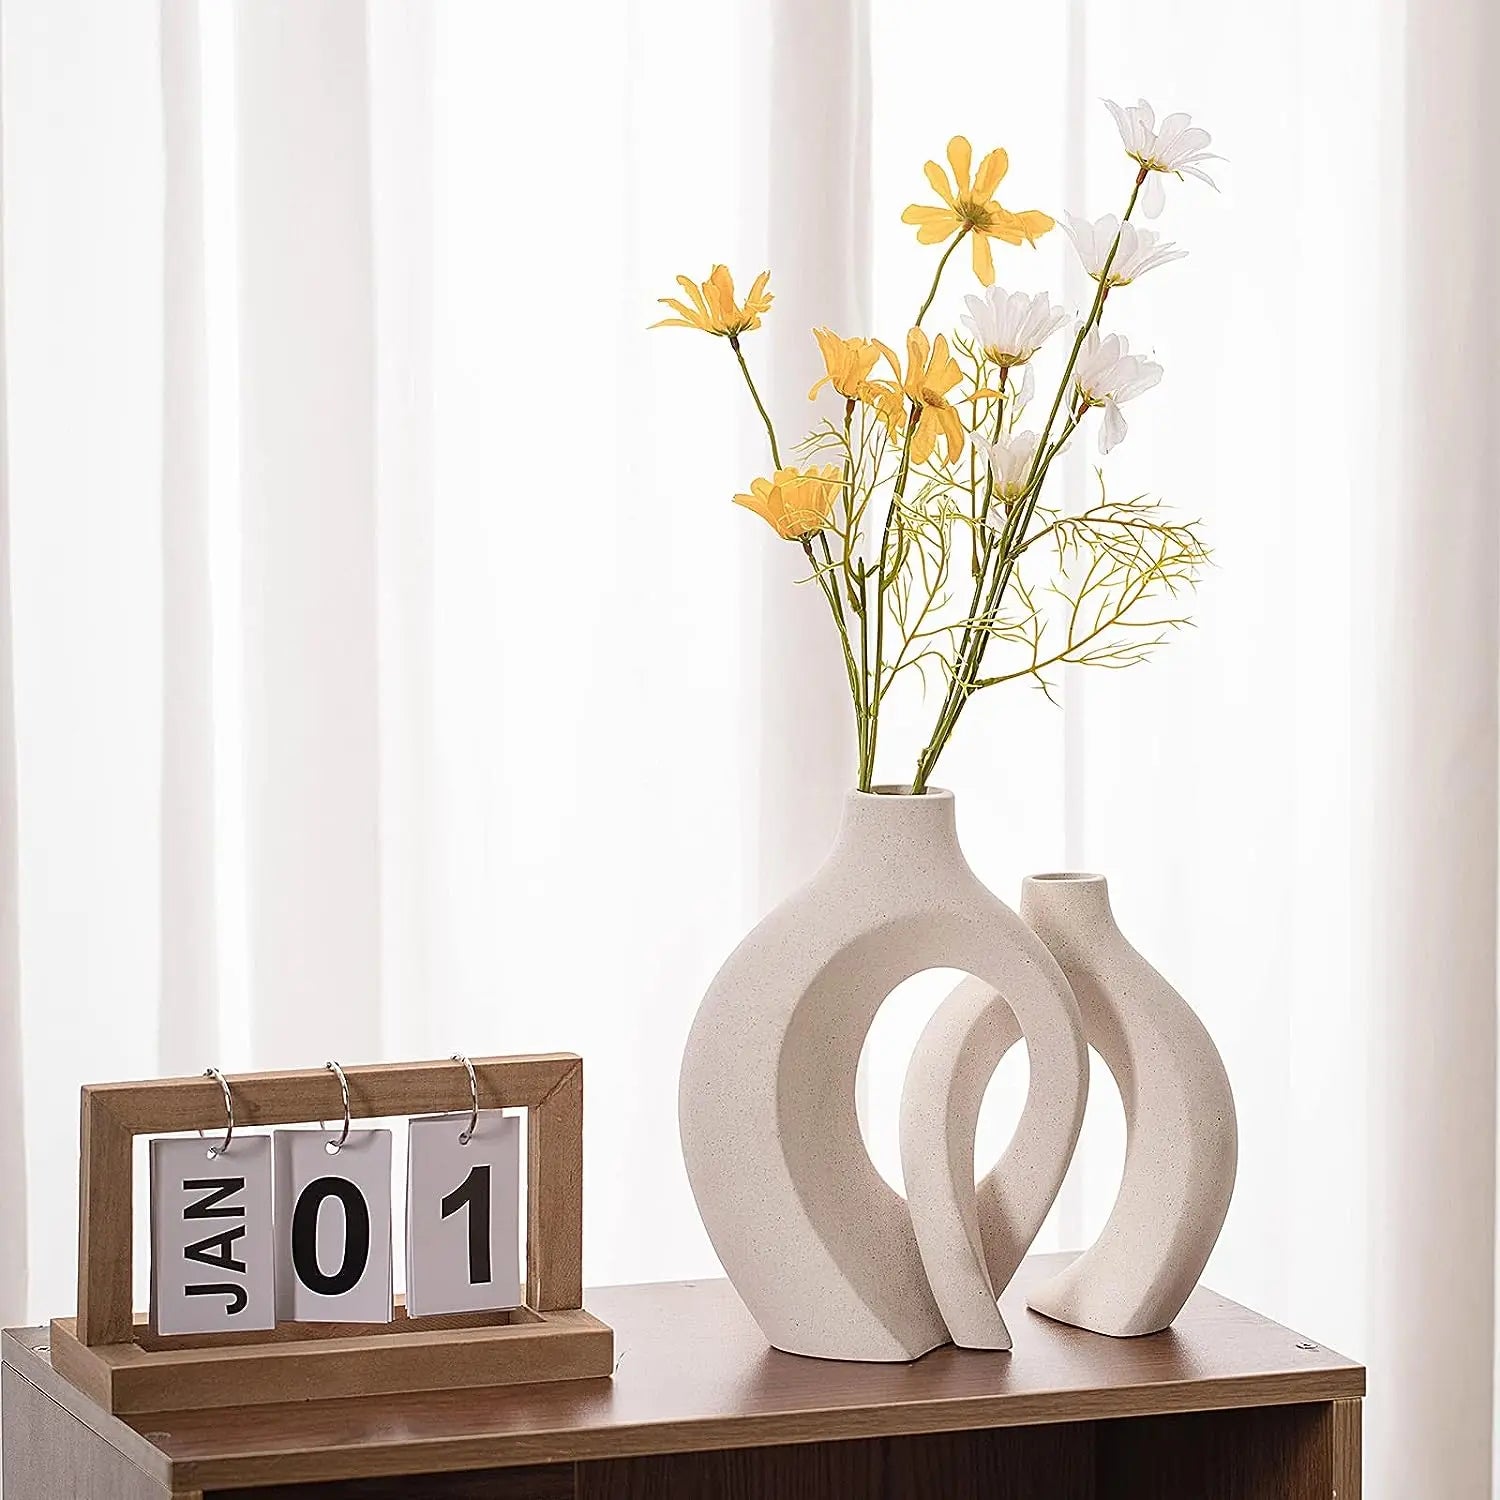 White Ceramic Vases- 2 for Modern Home Decor,Round Matte Boho Vase for  Decor,Ceramic Vases Minimalist Nordic Style for Wedding Dinner Table Living